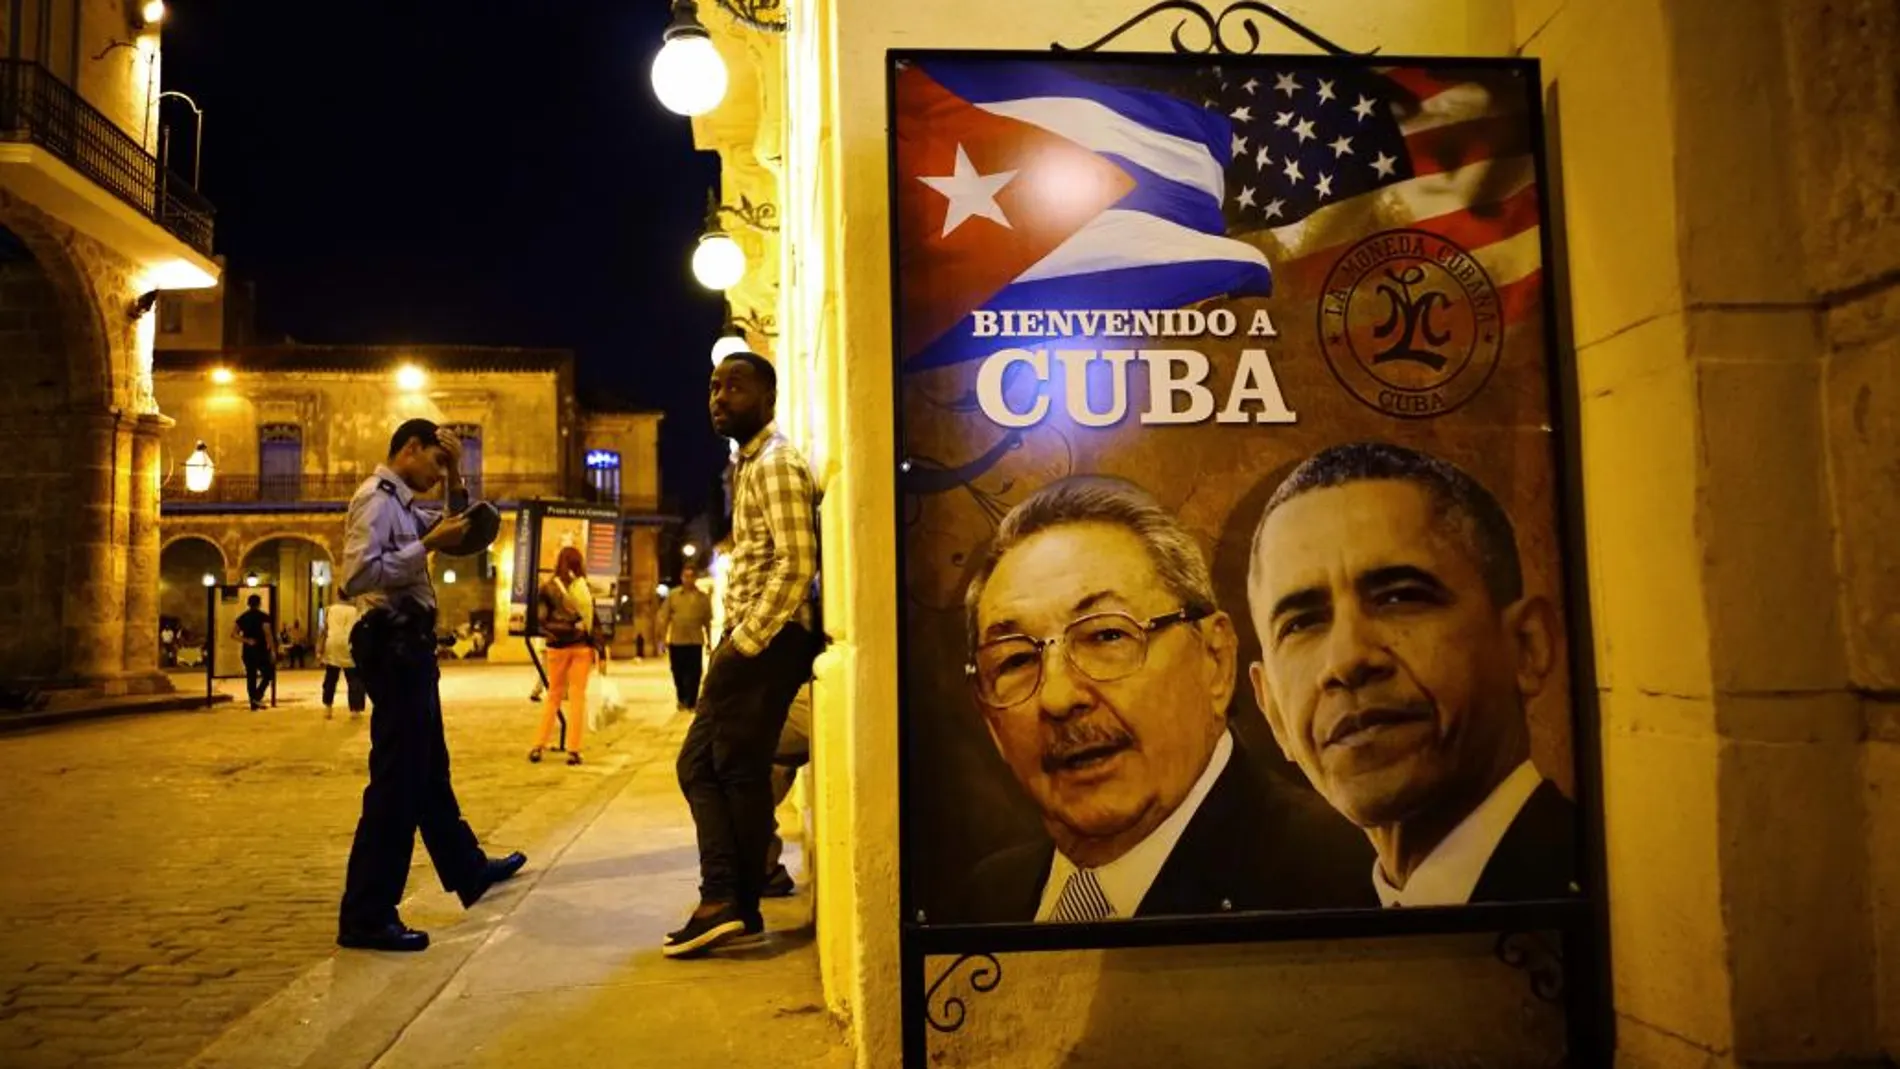 Un póster en la Habana con retratos de Raul Castro, y de Obama en el que se le da la bienvenida a Cuba